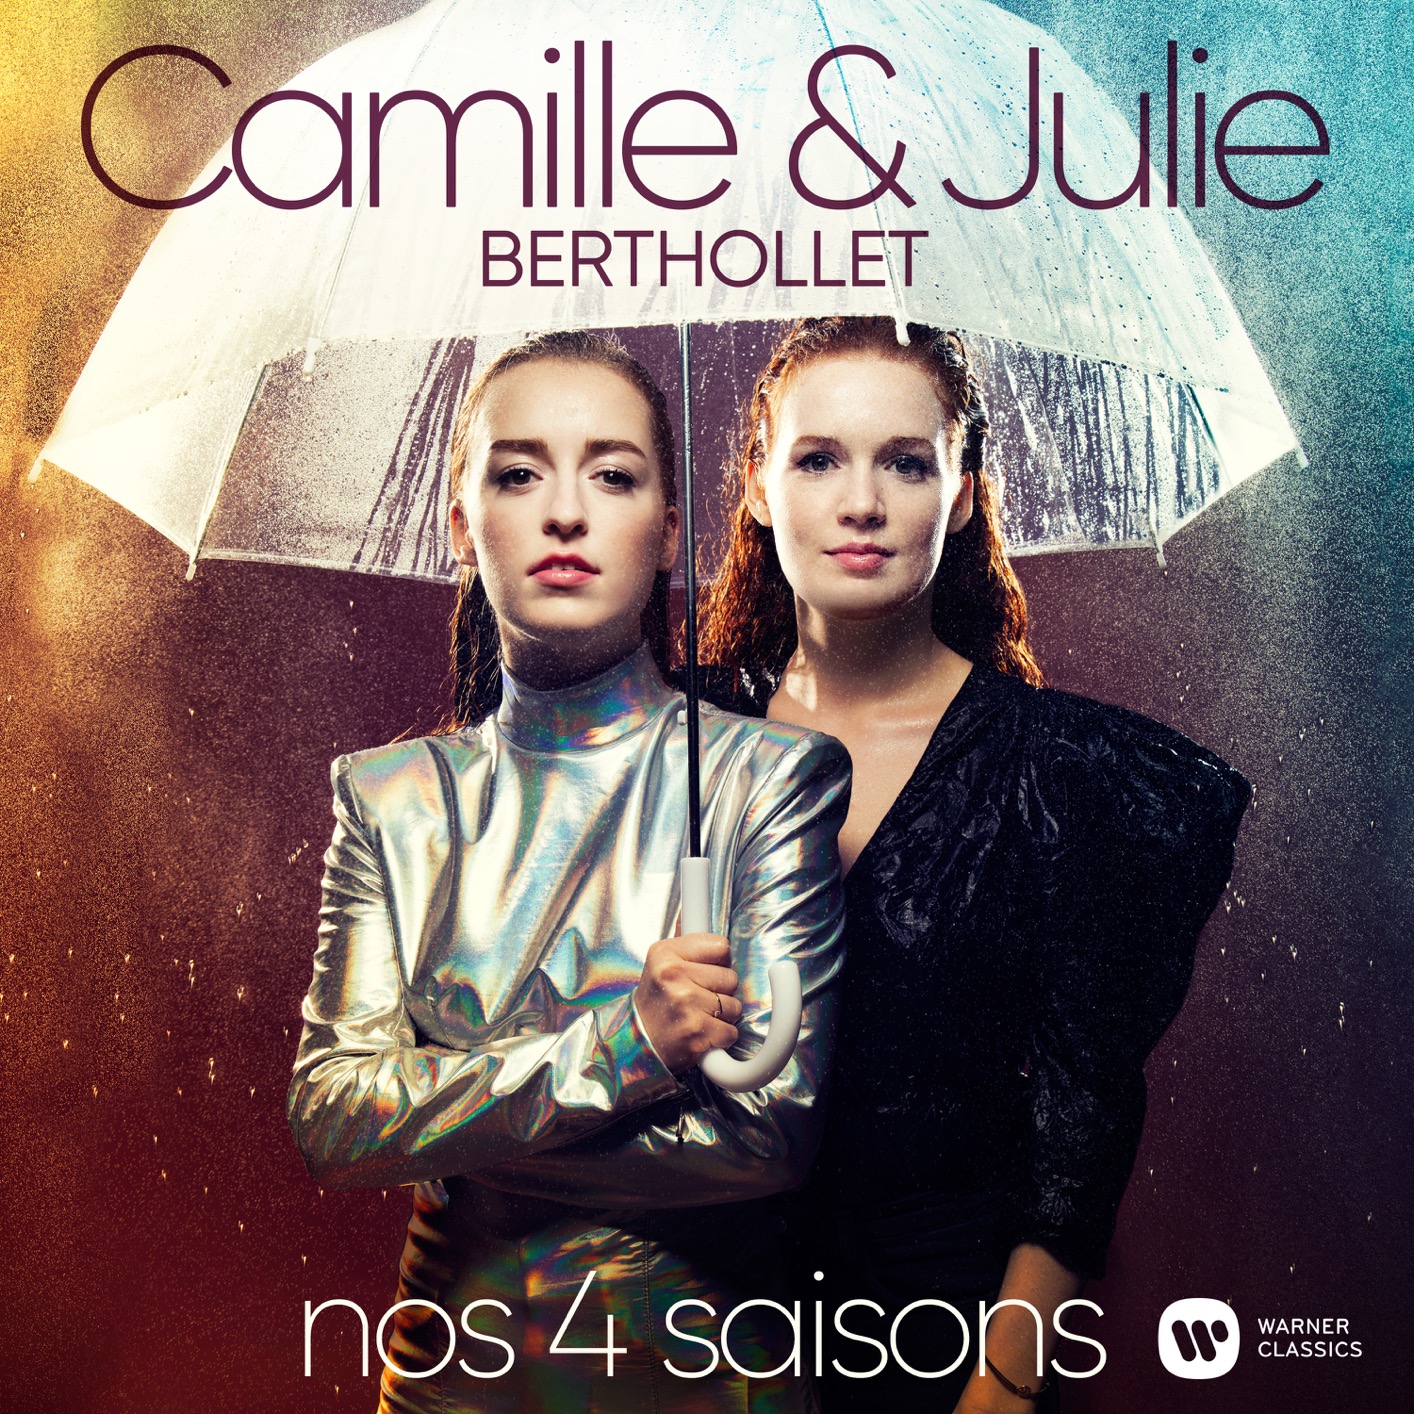 Camille Berthollet & Julie Berthollet – Nos 4 Saisons (2020) [Official Digital Download 24bit/96kHz]